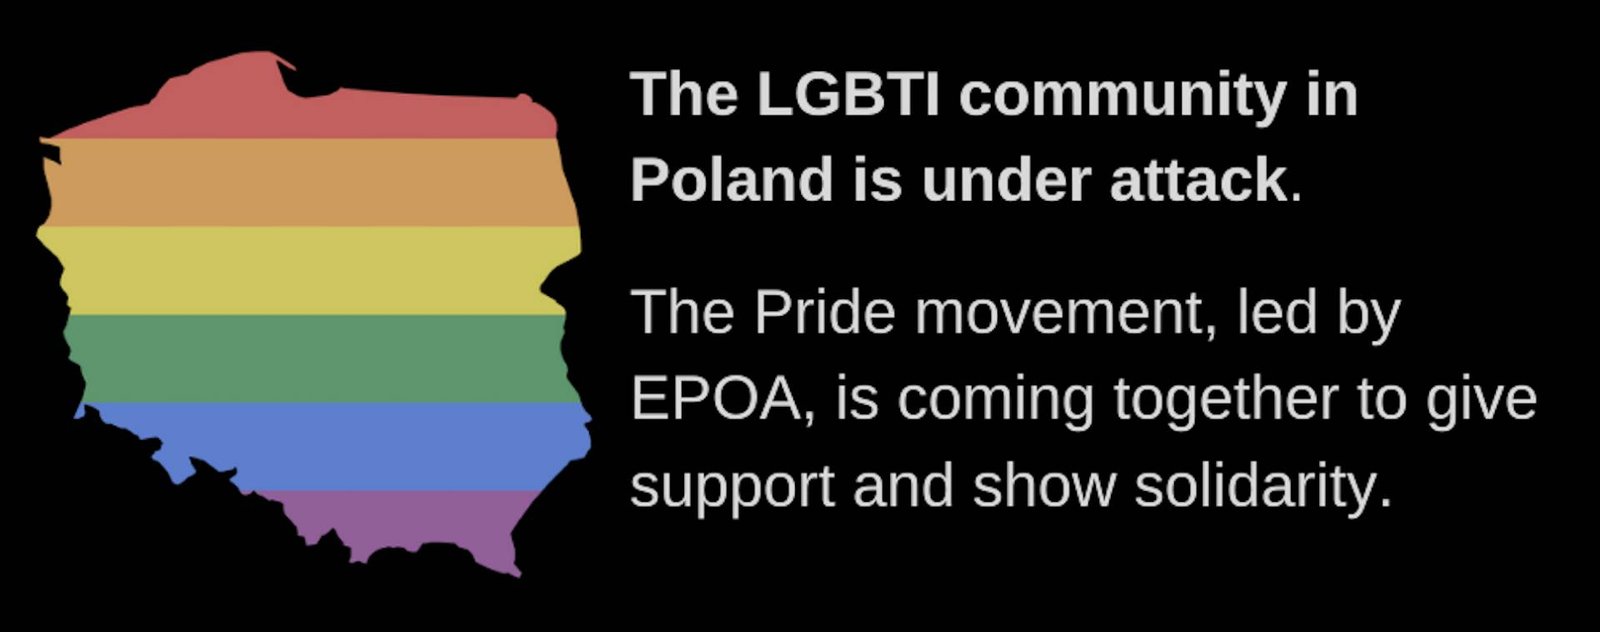 Pride movement unites to support LGBTI community under attack in Poland